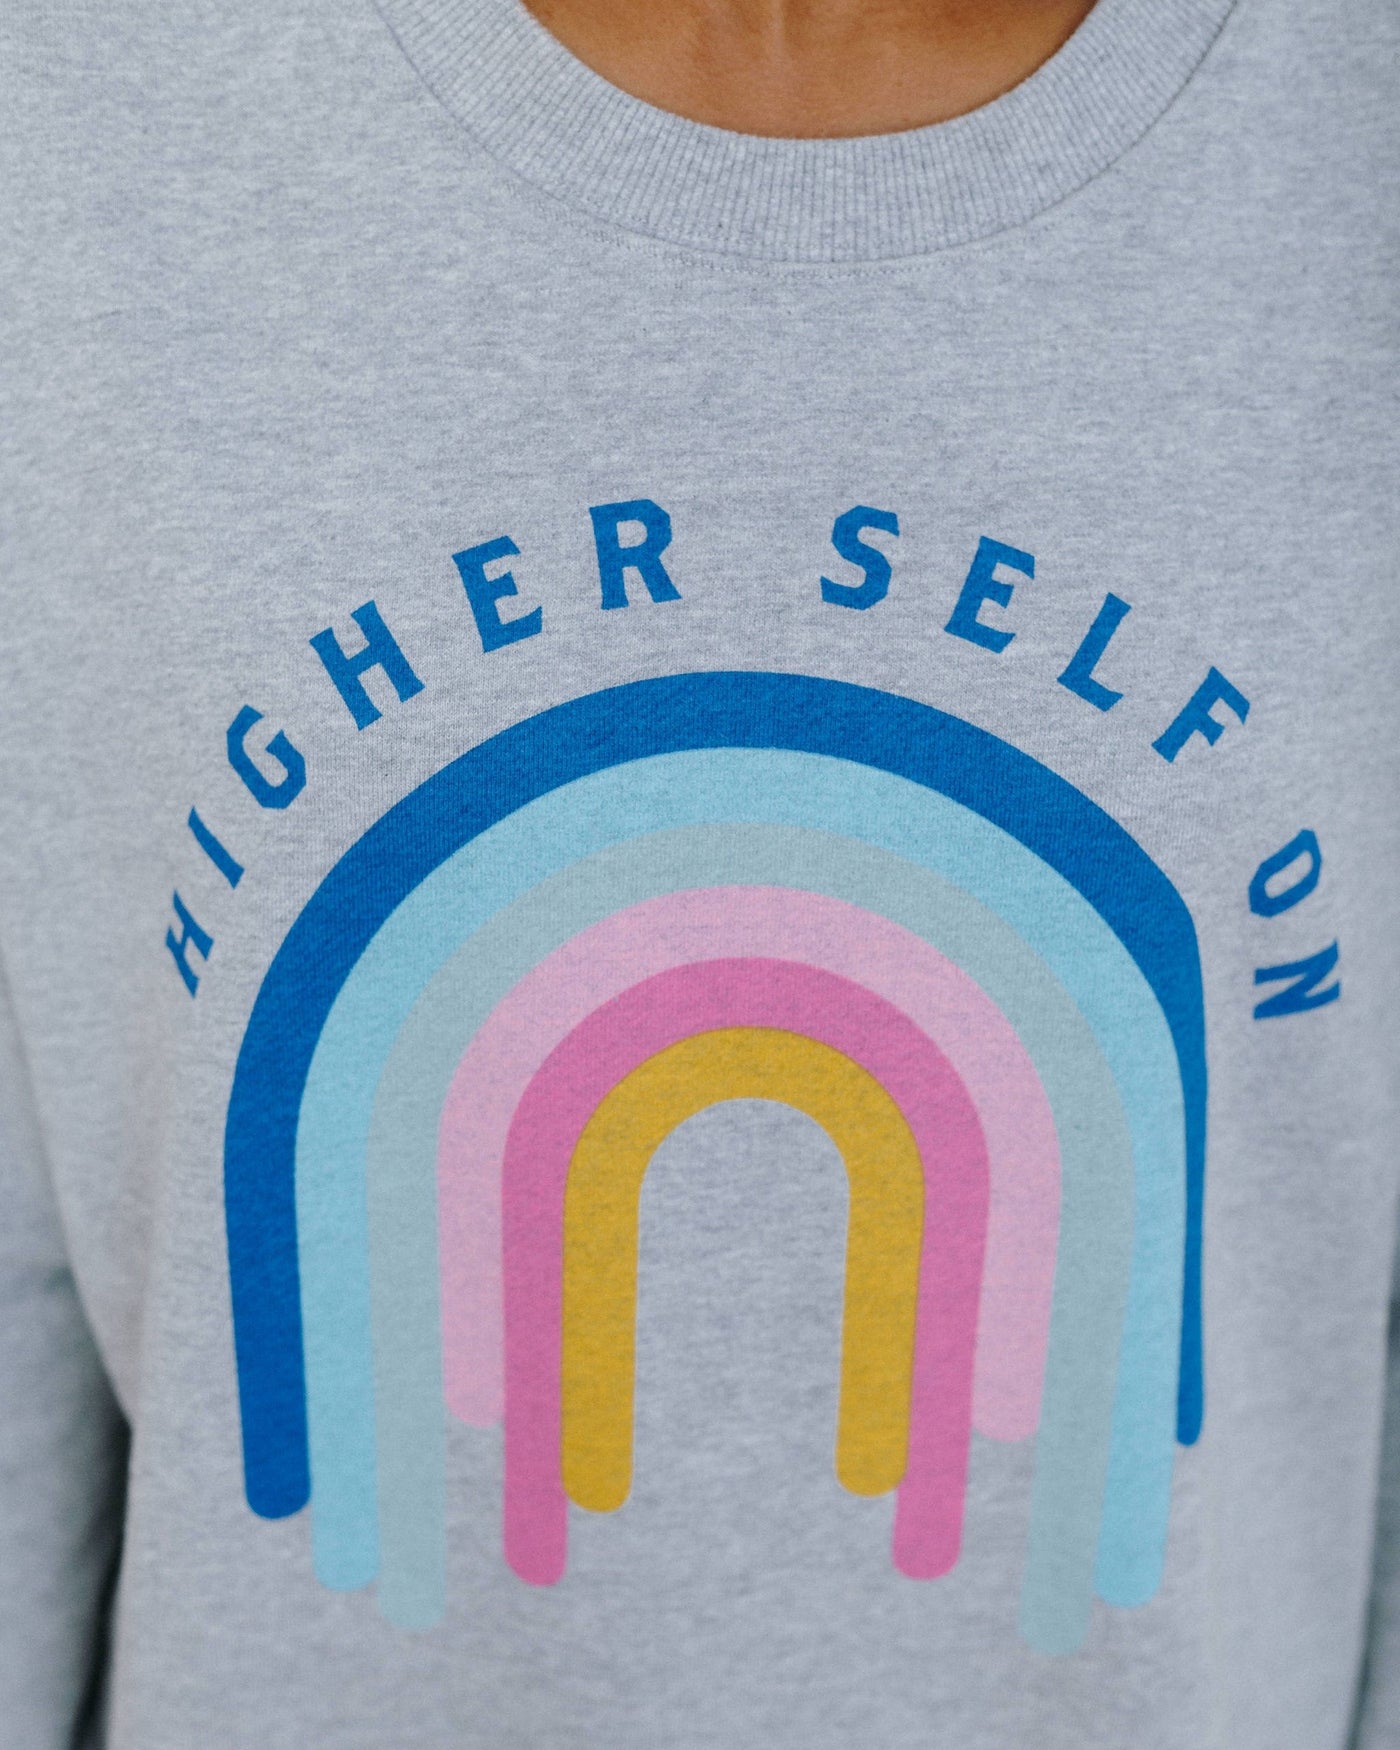 Higher Self On Relaxed Sweatshirt (heather grey)